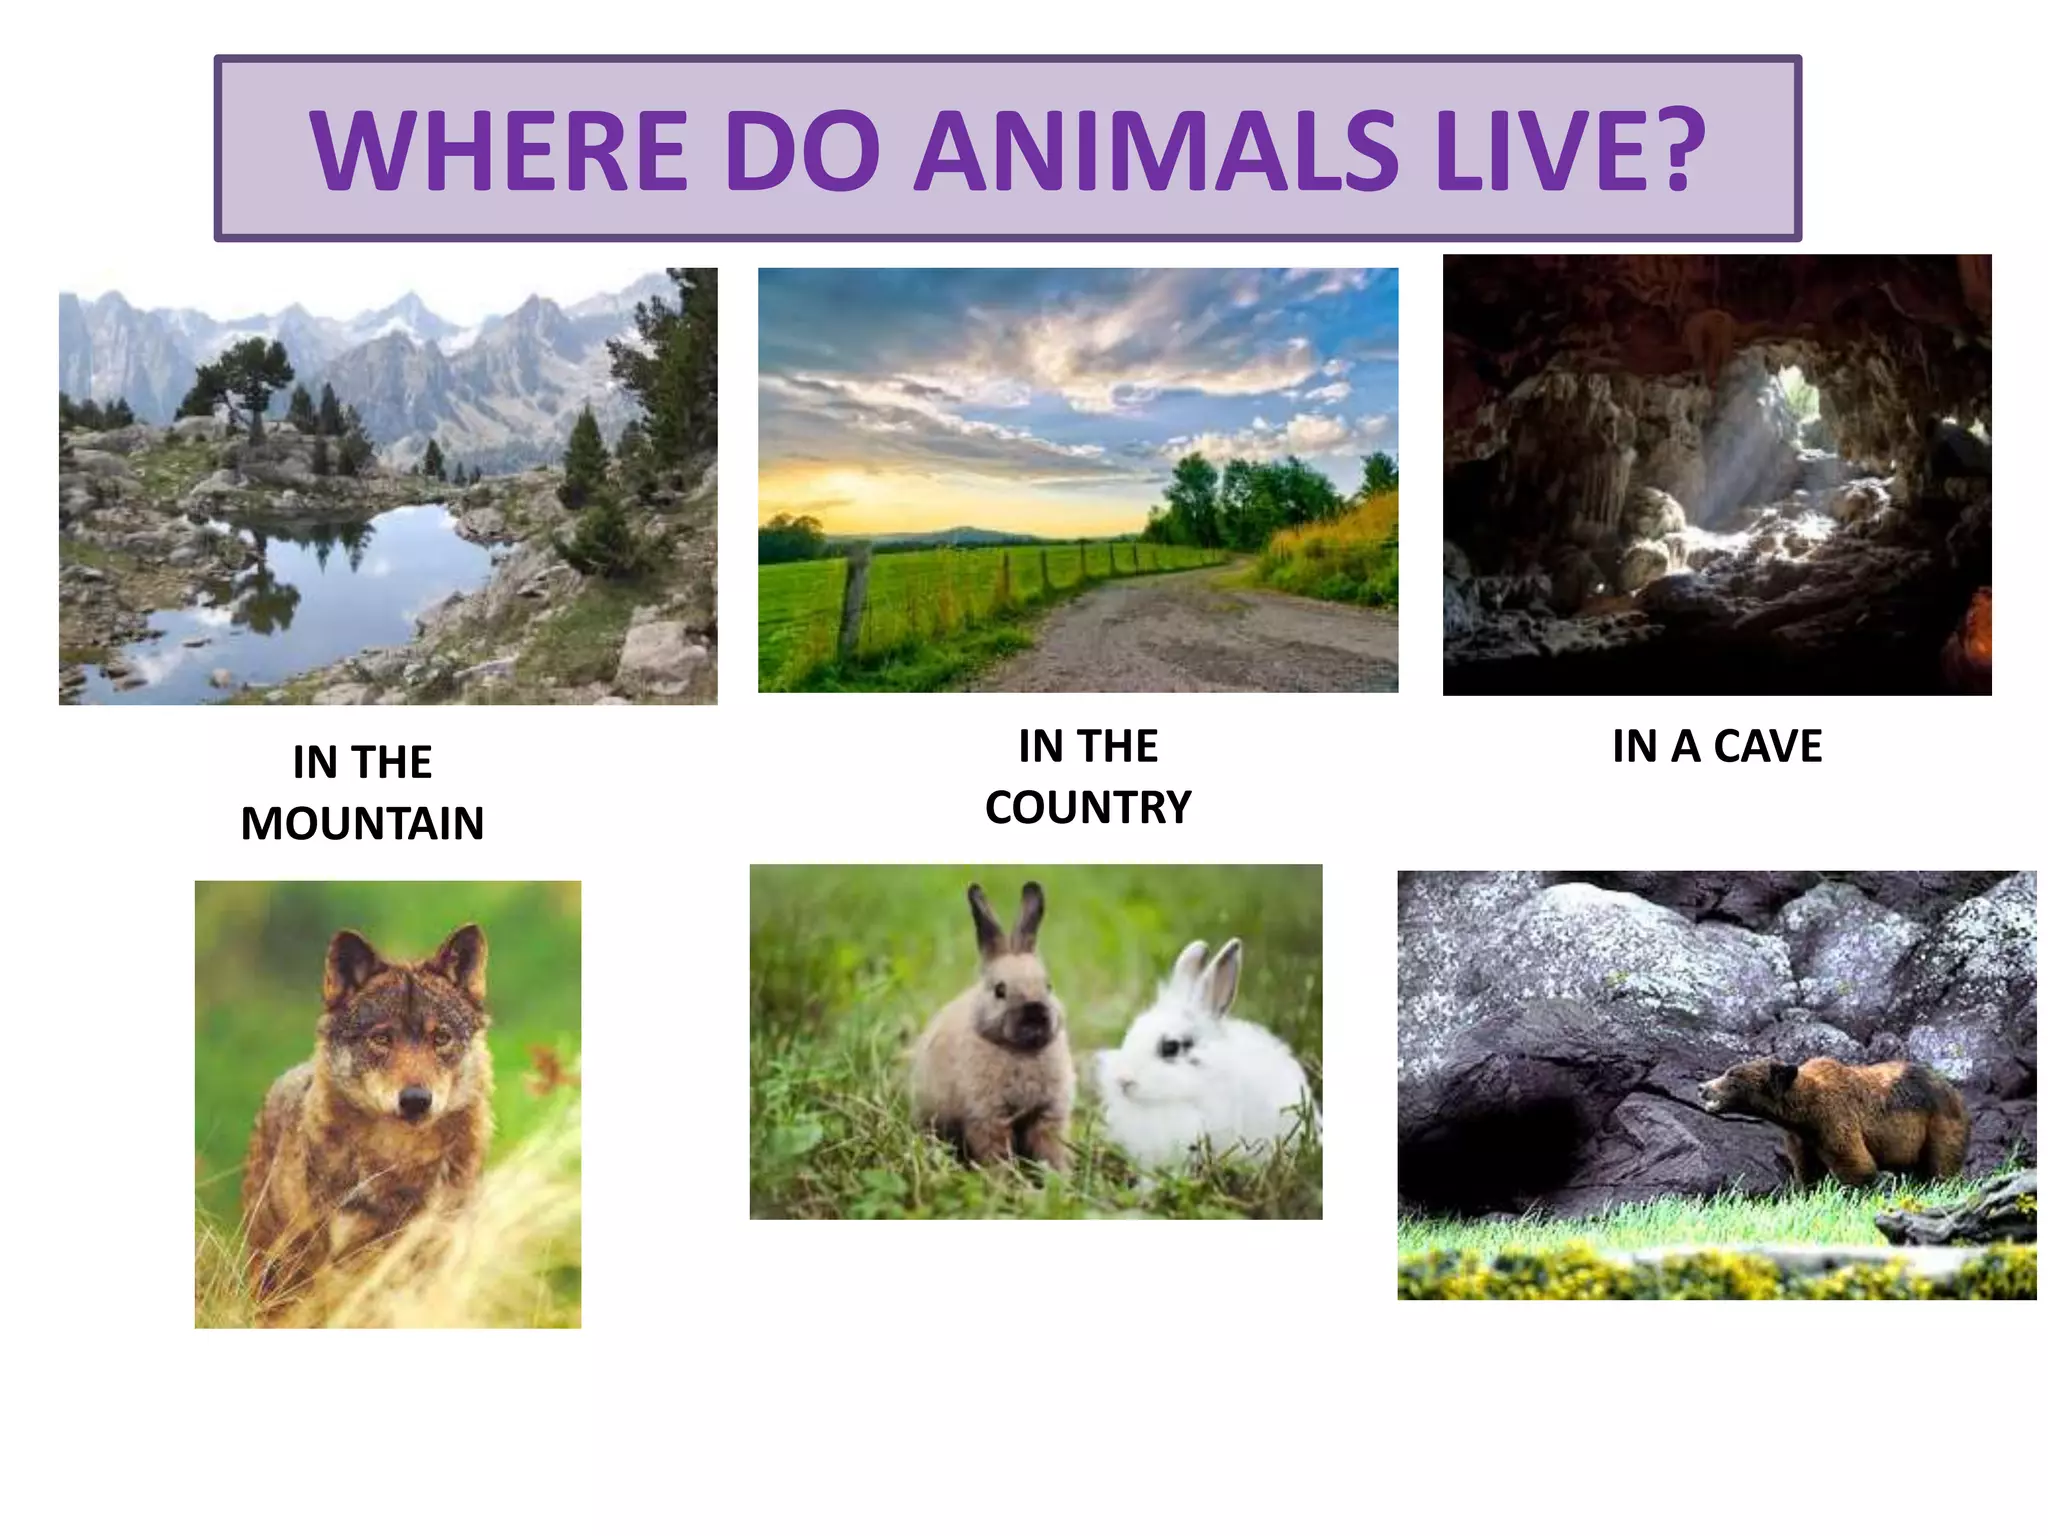 Where do animals live